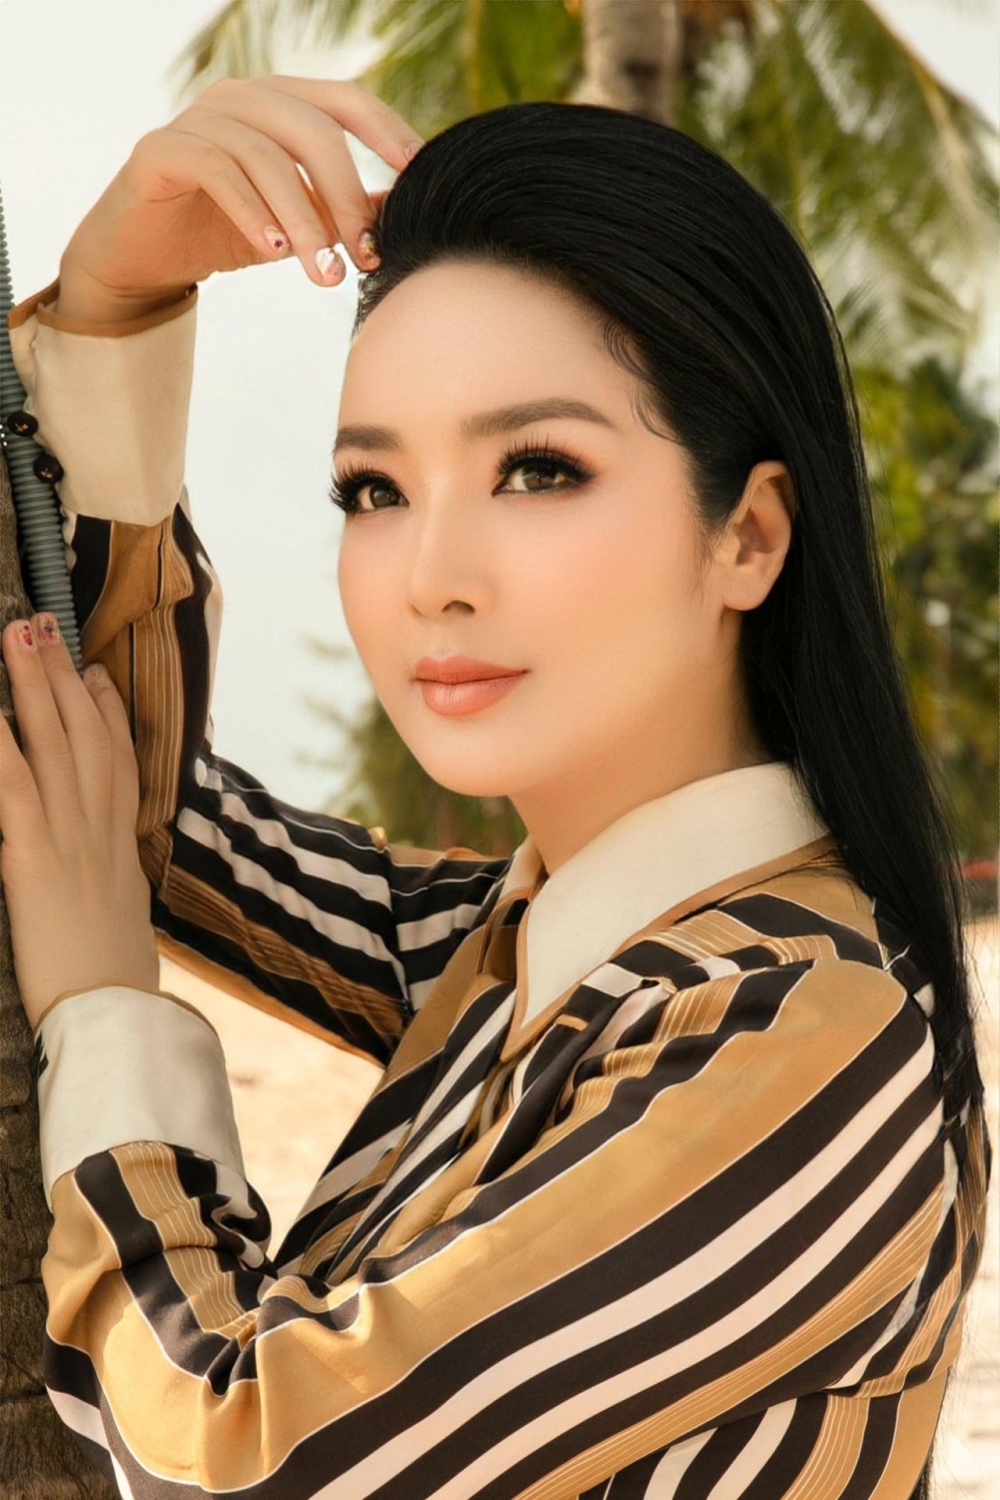 Á hậu Thùy Dung khoe vai trần với váy lạ mắt, Đào Thị Hà mặc jumpsuit xẻ vòng 1 táo bạo